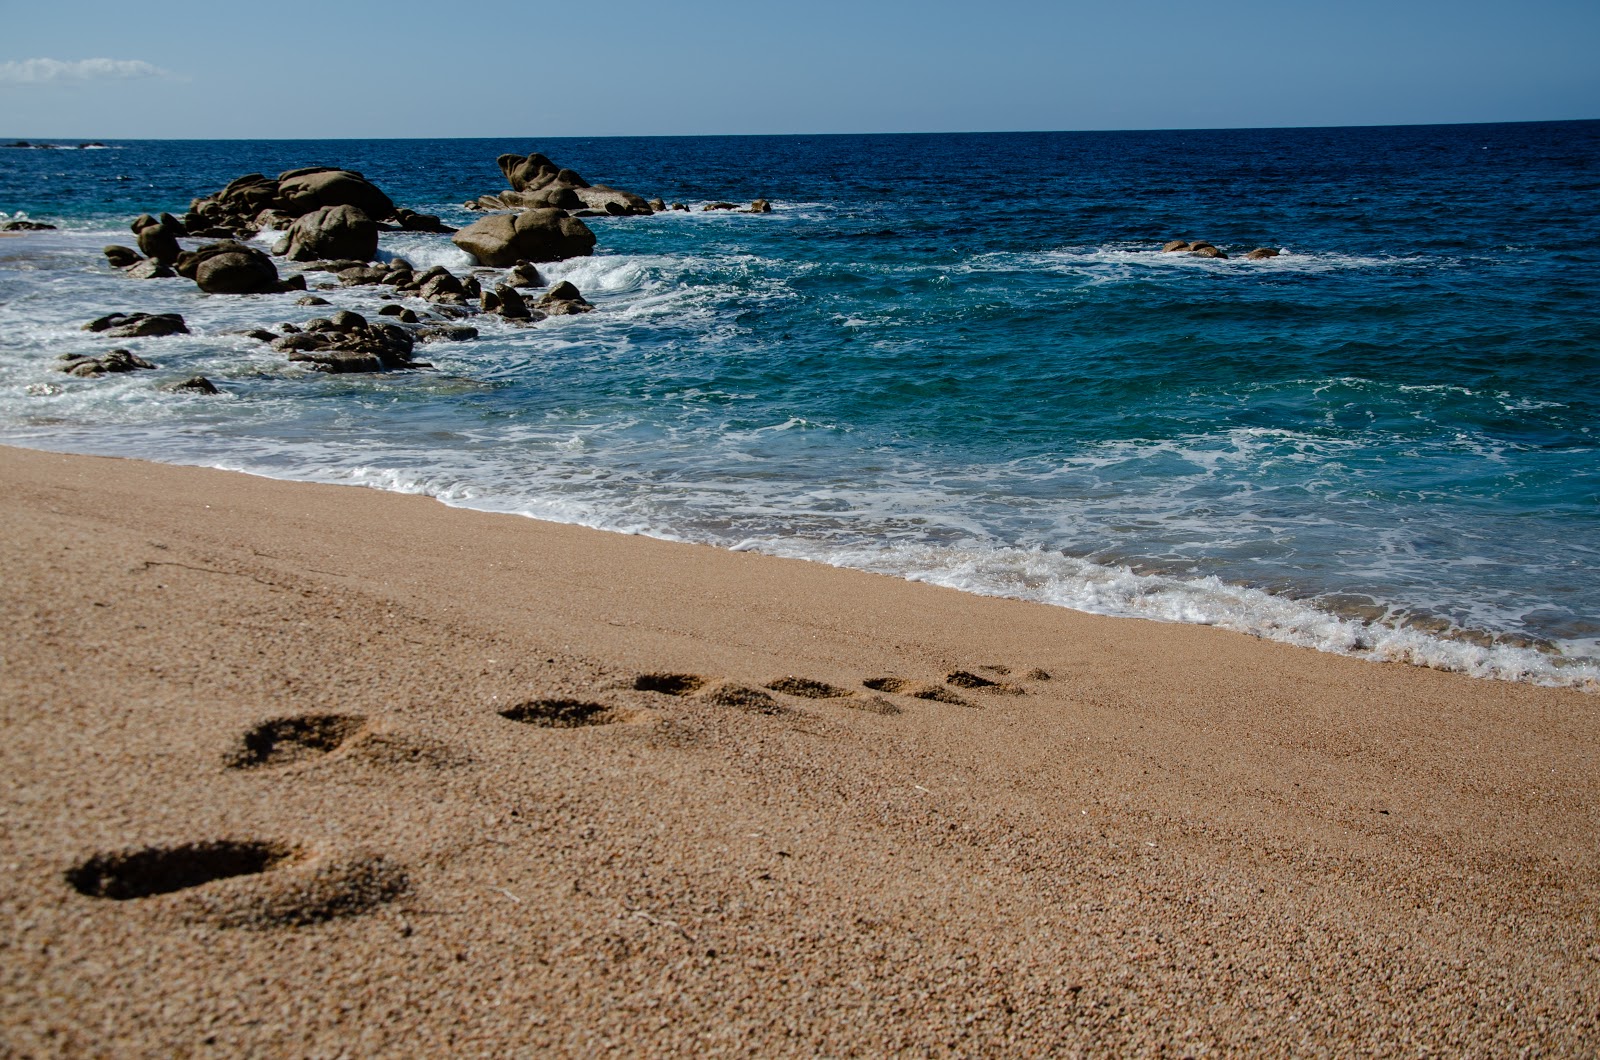 Fotografie cu Erbaju beach - locul popular printre cunoscătorii de relaxare